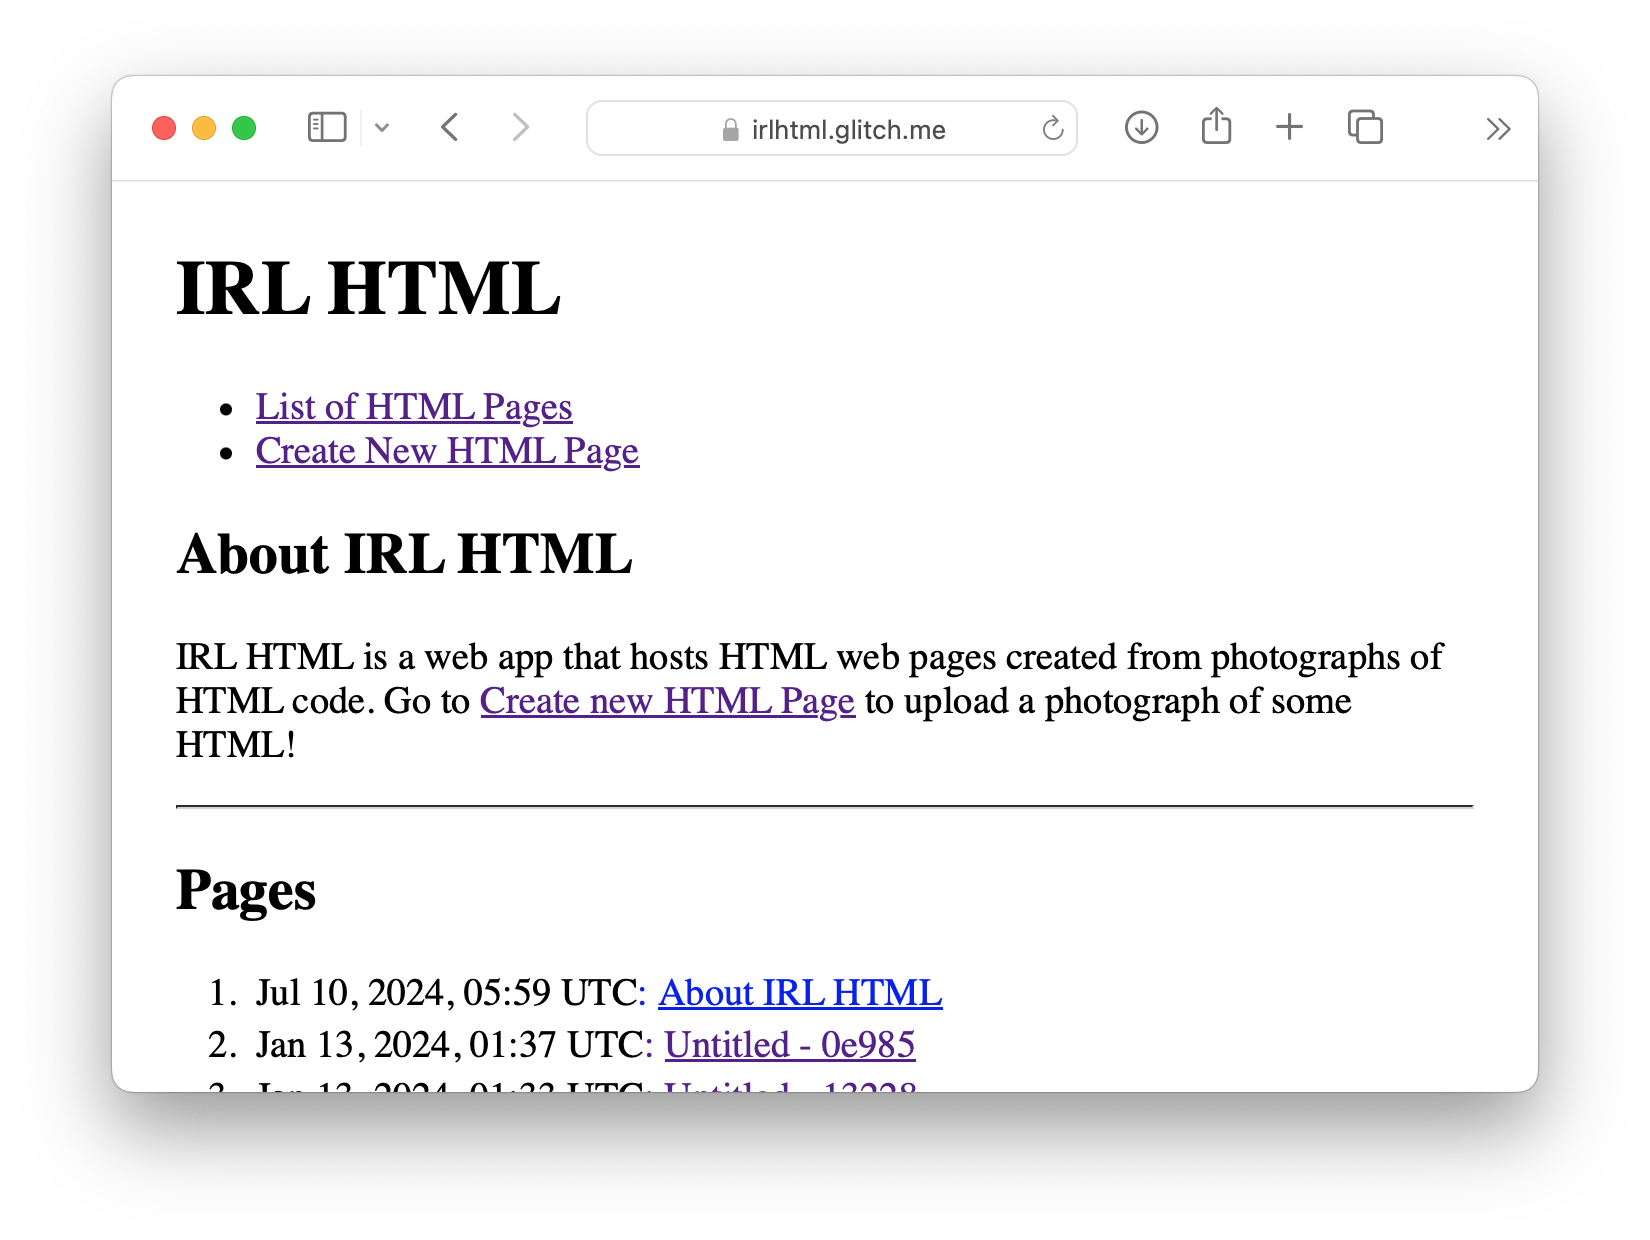 A screenshot of the IRL HTML website